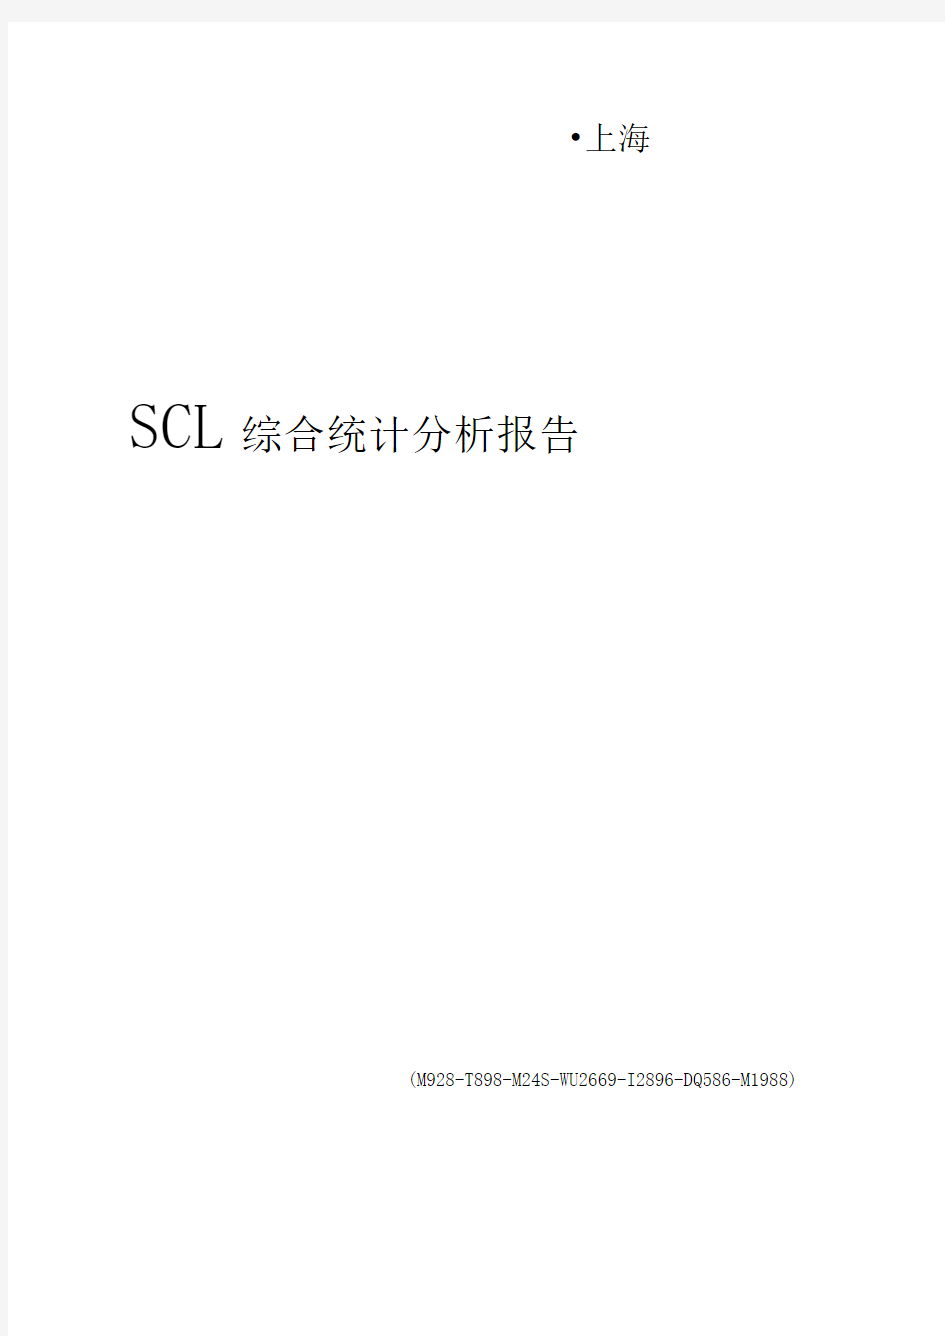 SCL综合统计分析报告